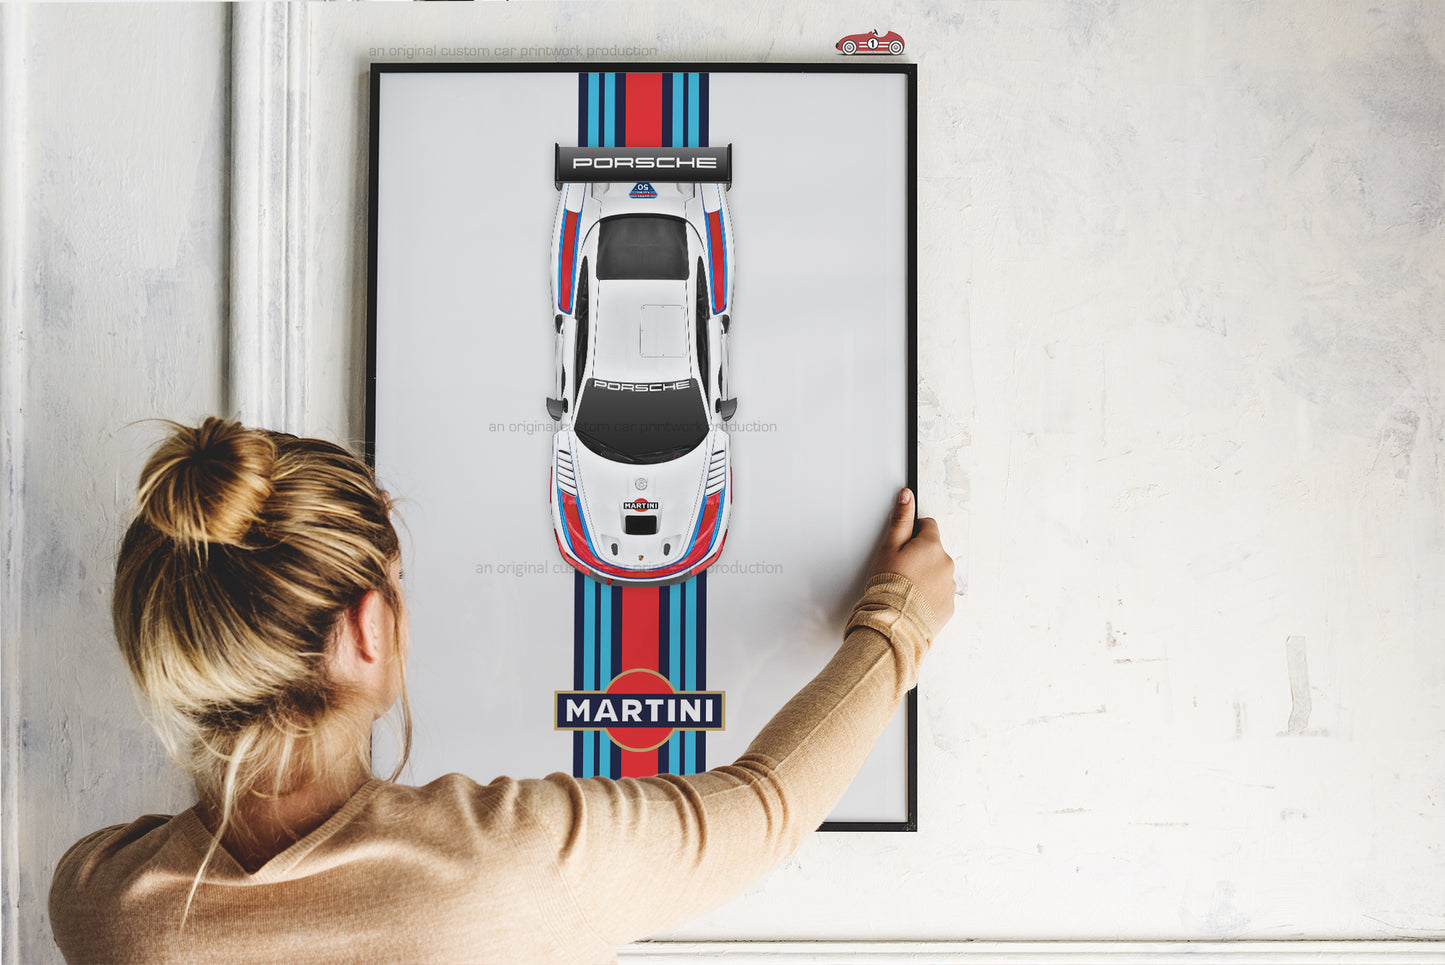 2019 Porsche 935 Top View Martini Racing Wall Art - Liveries